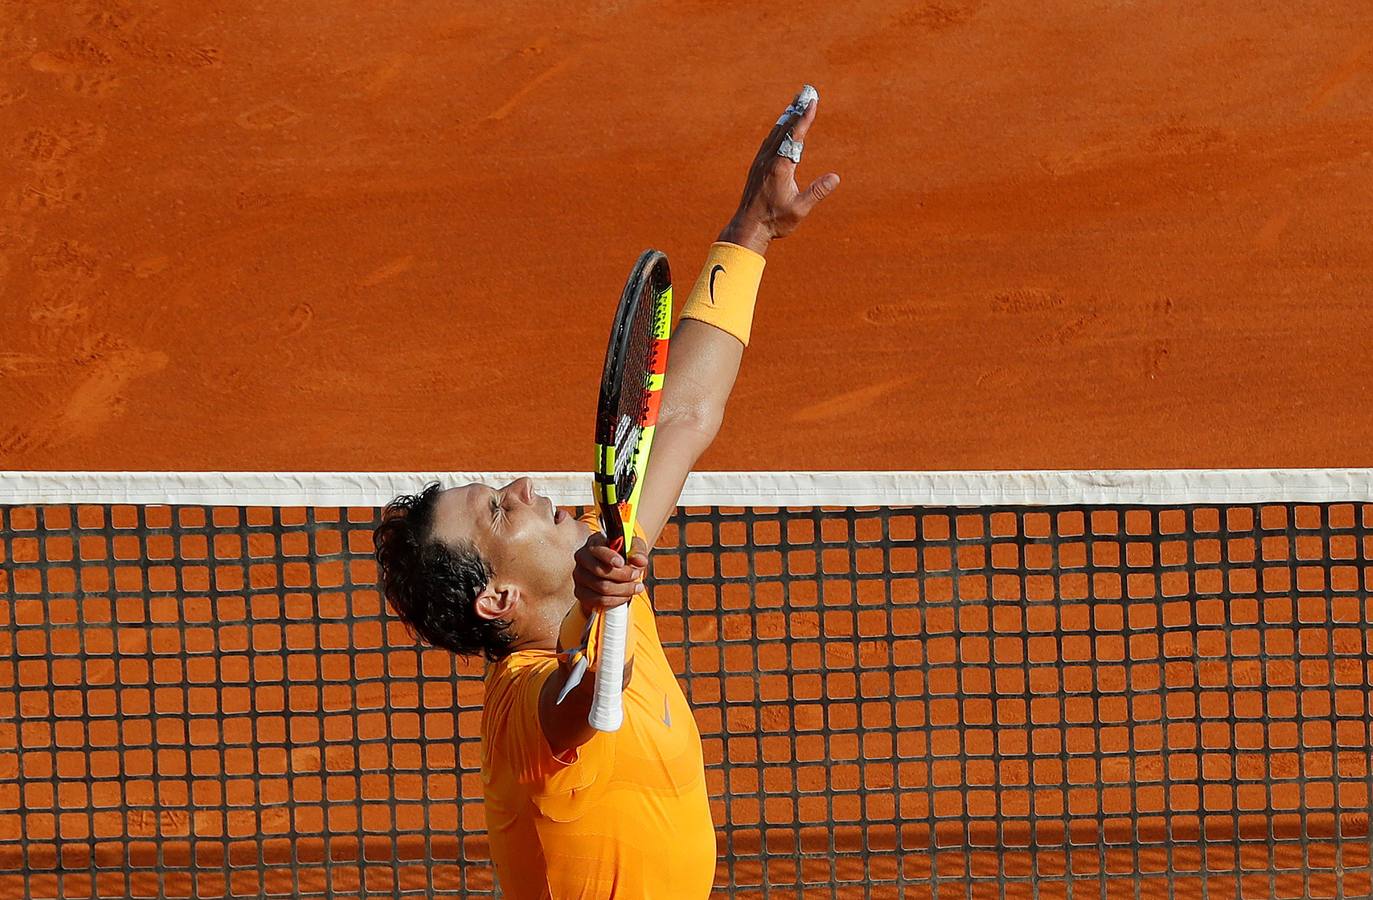 Rafa Nadal busca su undécimo título en el MAsters 1000 de Montecarlo. SU primer partido ha sido ante Bedene.